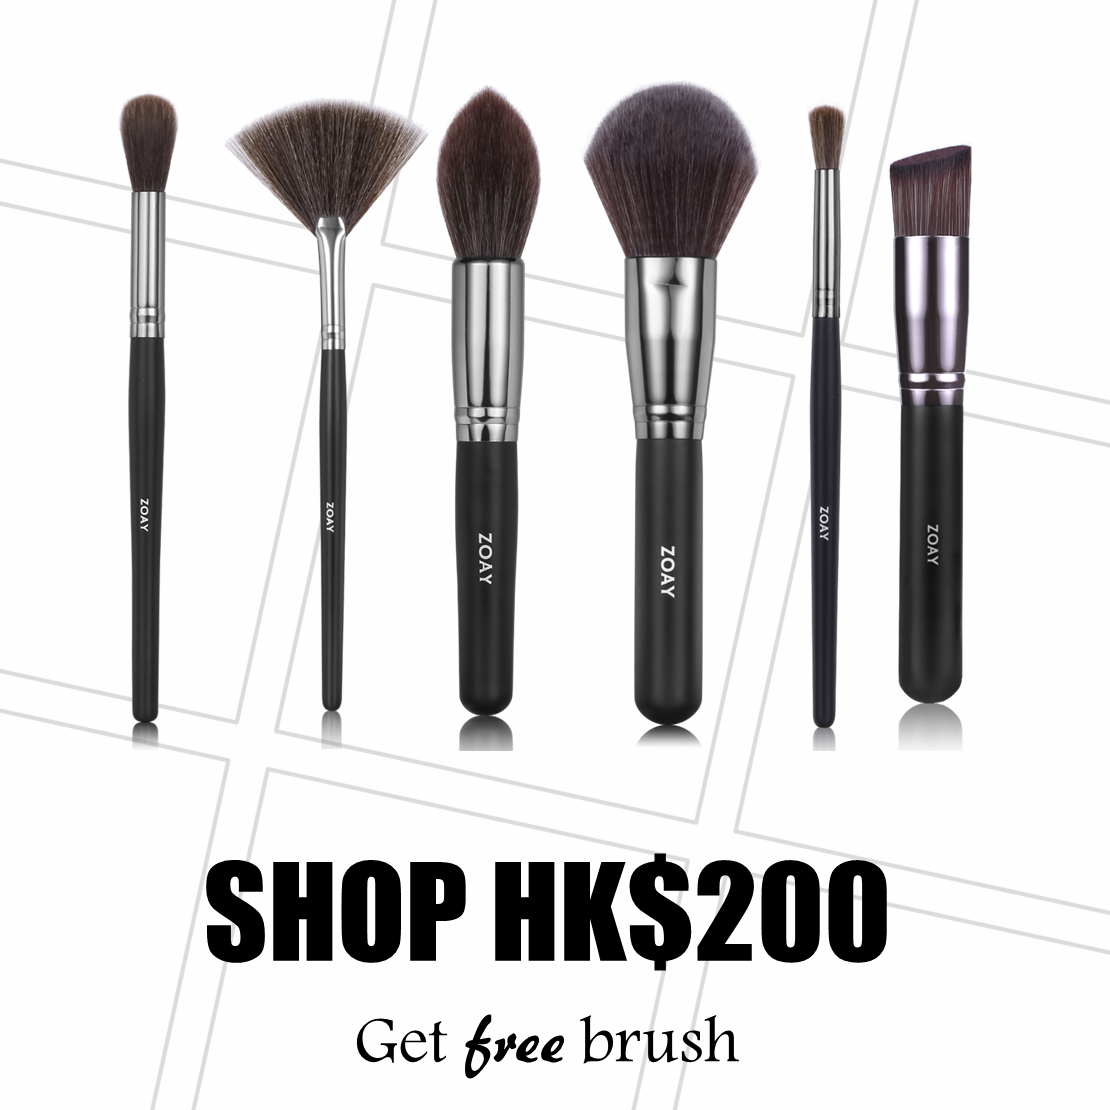 Shop $200 Get free brush